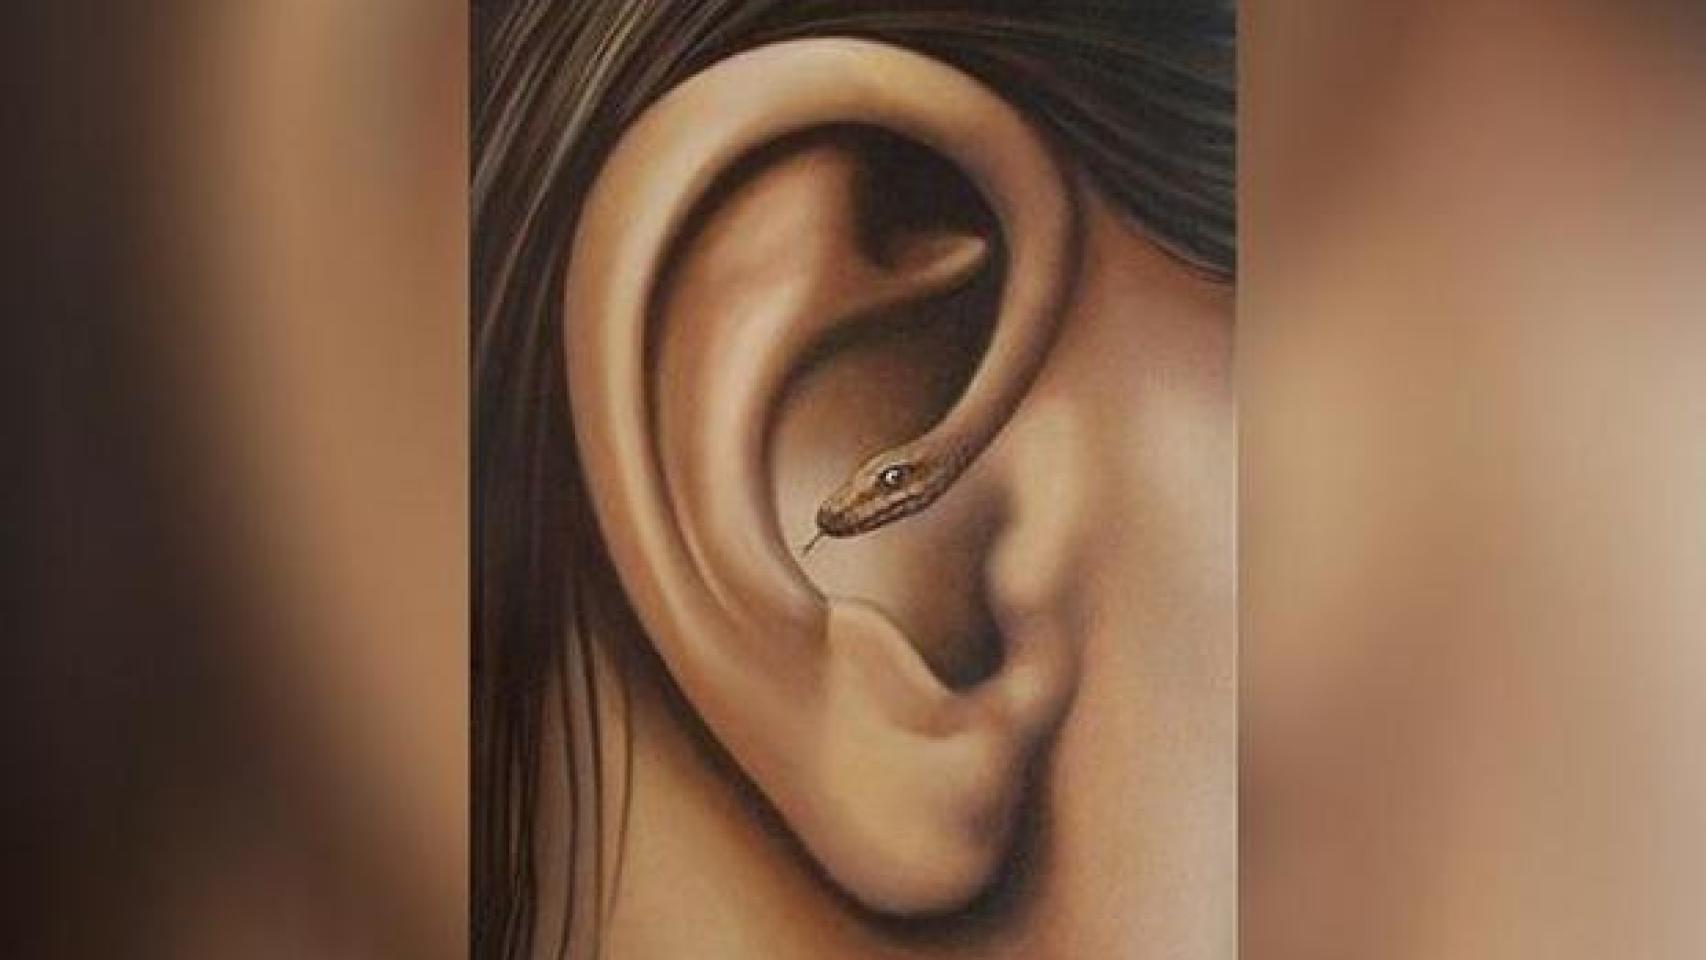 ¿Qué viste primero? ¿Una oreja o una serpiente?